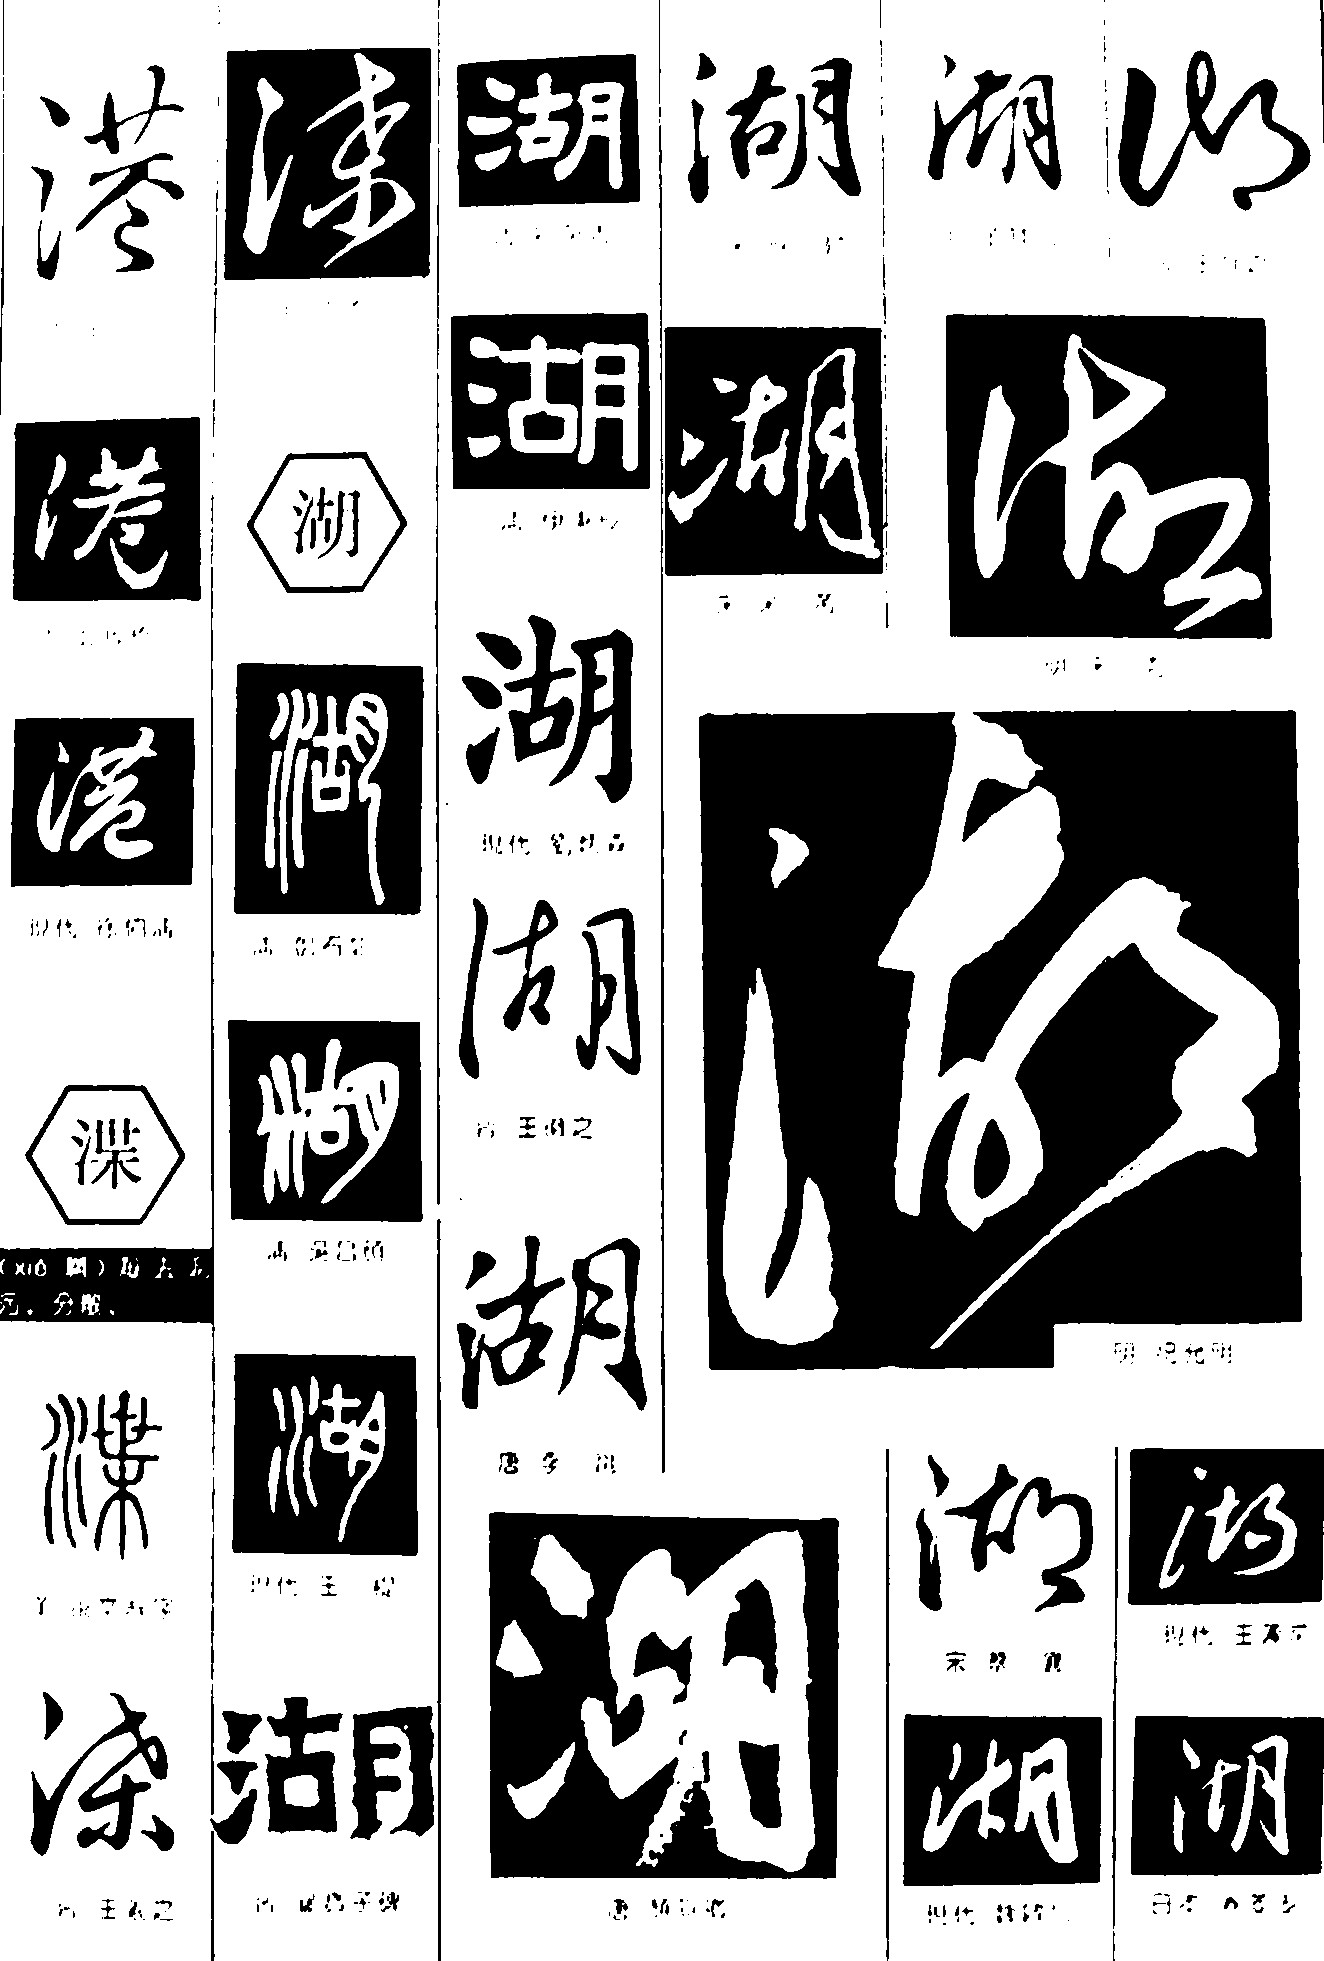 港渫湖_书法字体_字体设计作品-中国字体设计网_ziti.